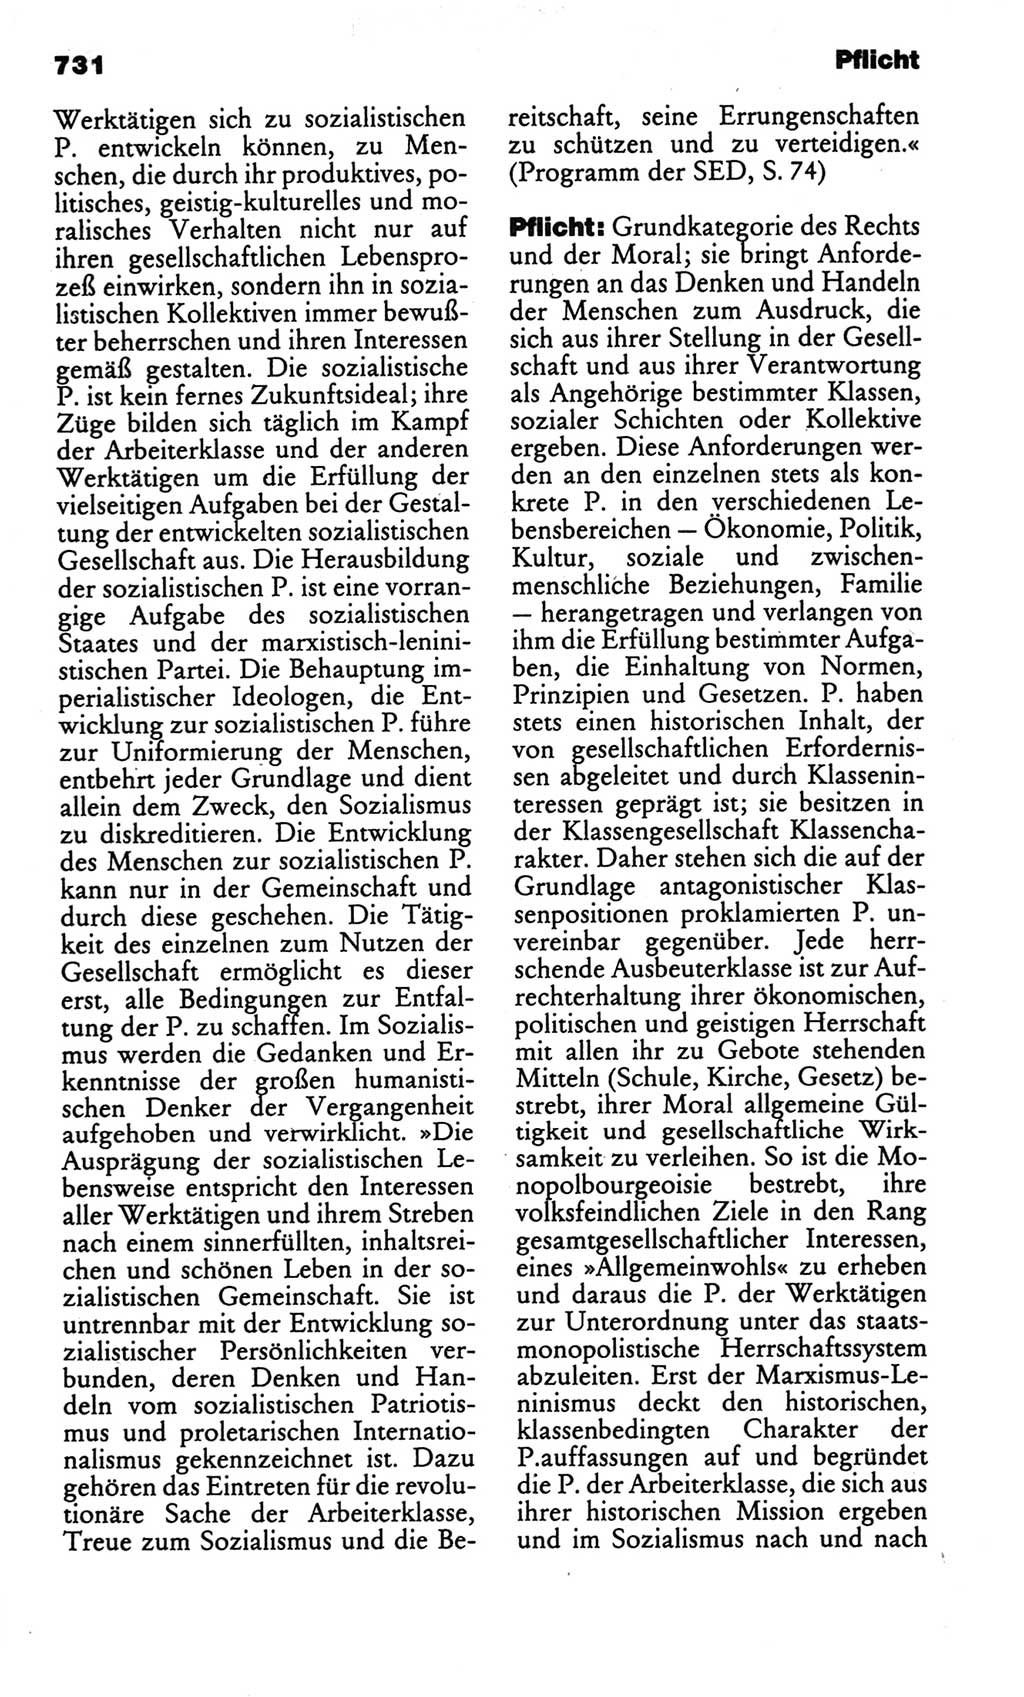 Kleines politisches Wörterbuch [Deutsche Demokratische Republik (DDR)] 1986, Seite 731 (Kl. pol. Wb. DDR 1986, S. 731)